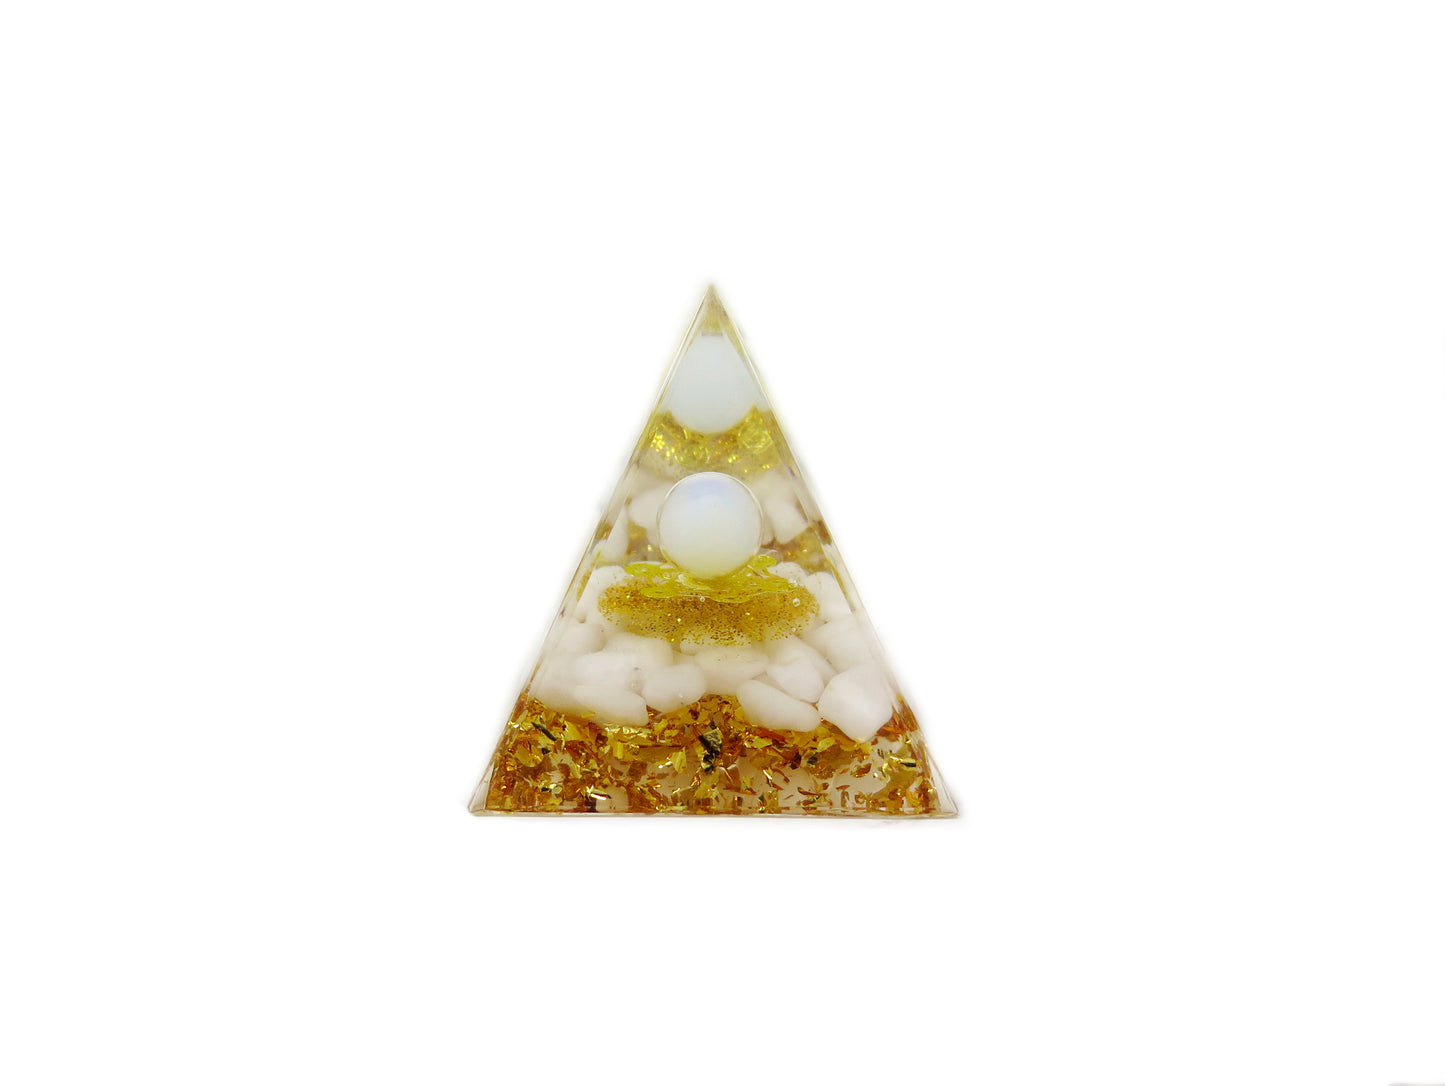 Healing Orgonite - Positive Energy Generator - resin Pyramid